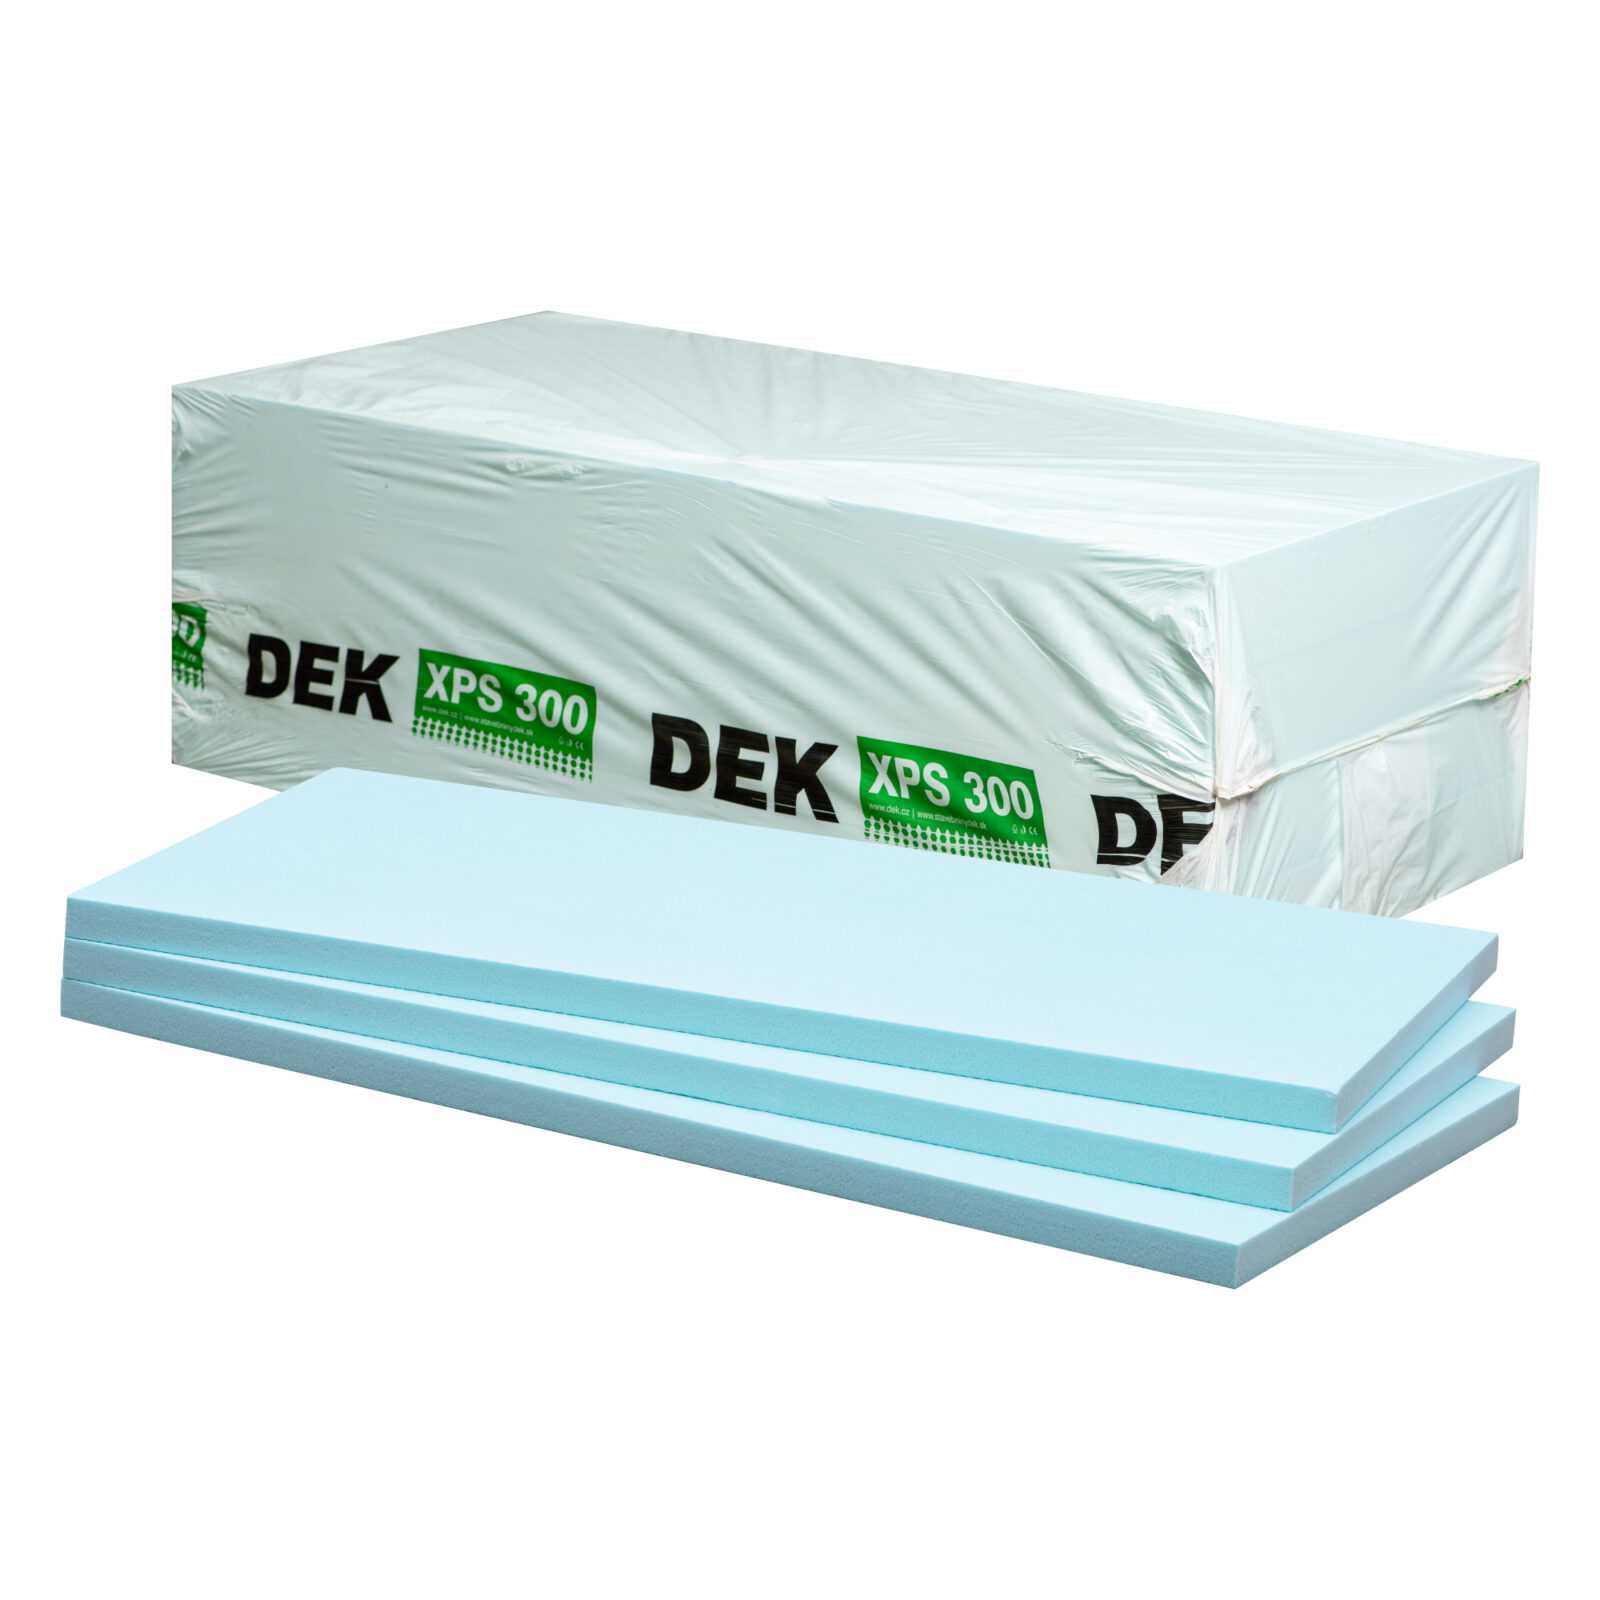 Tepelná izolace DEK XPS I 300 kPa 60 mm (5